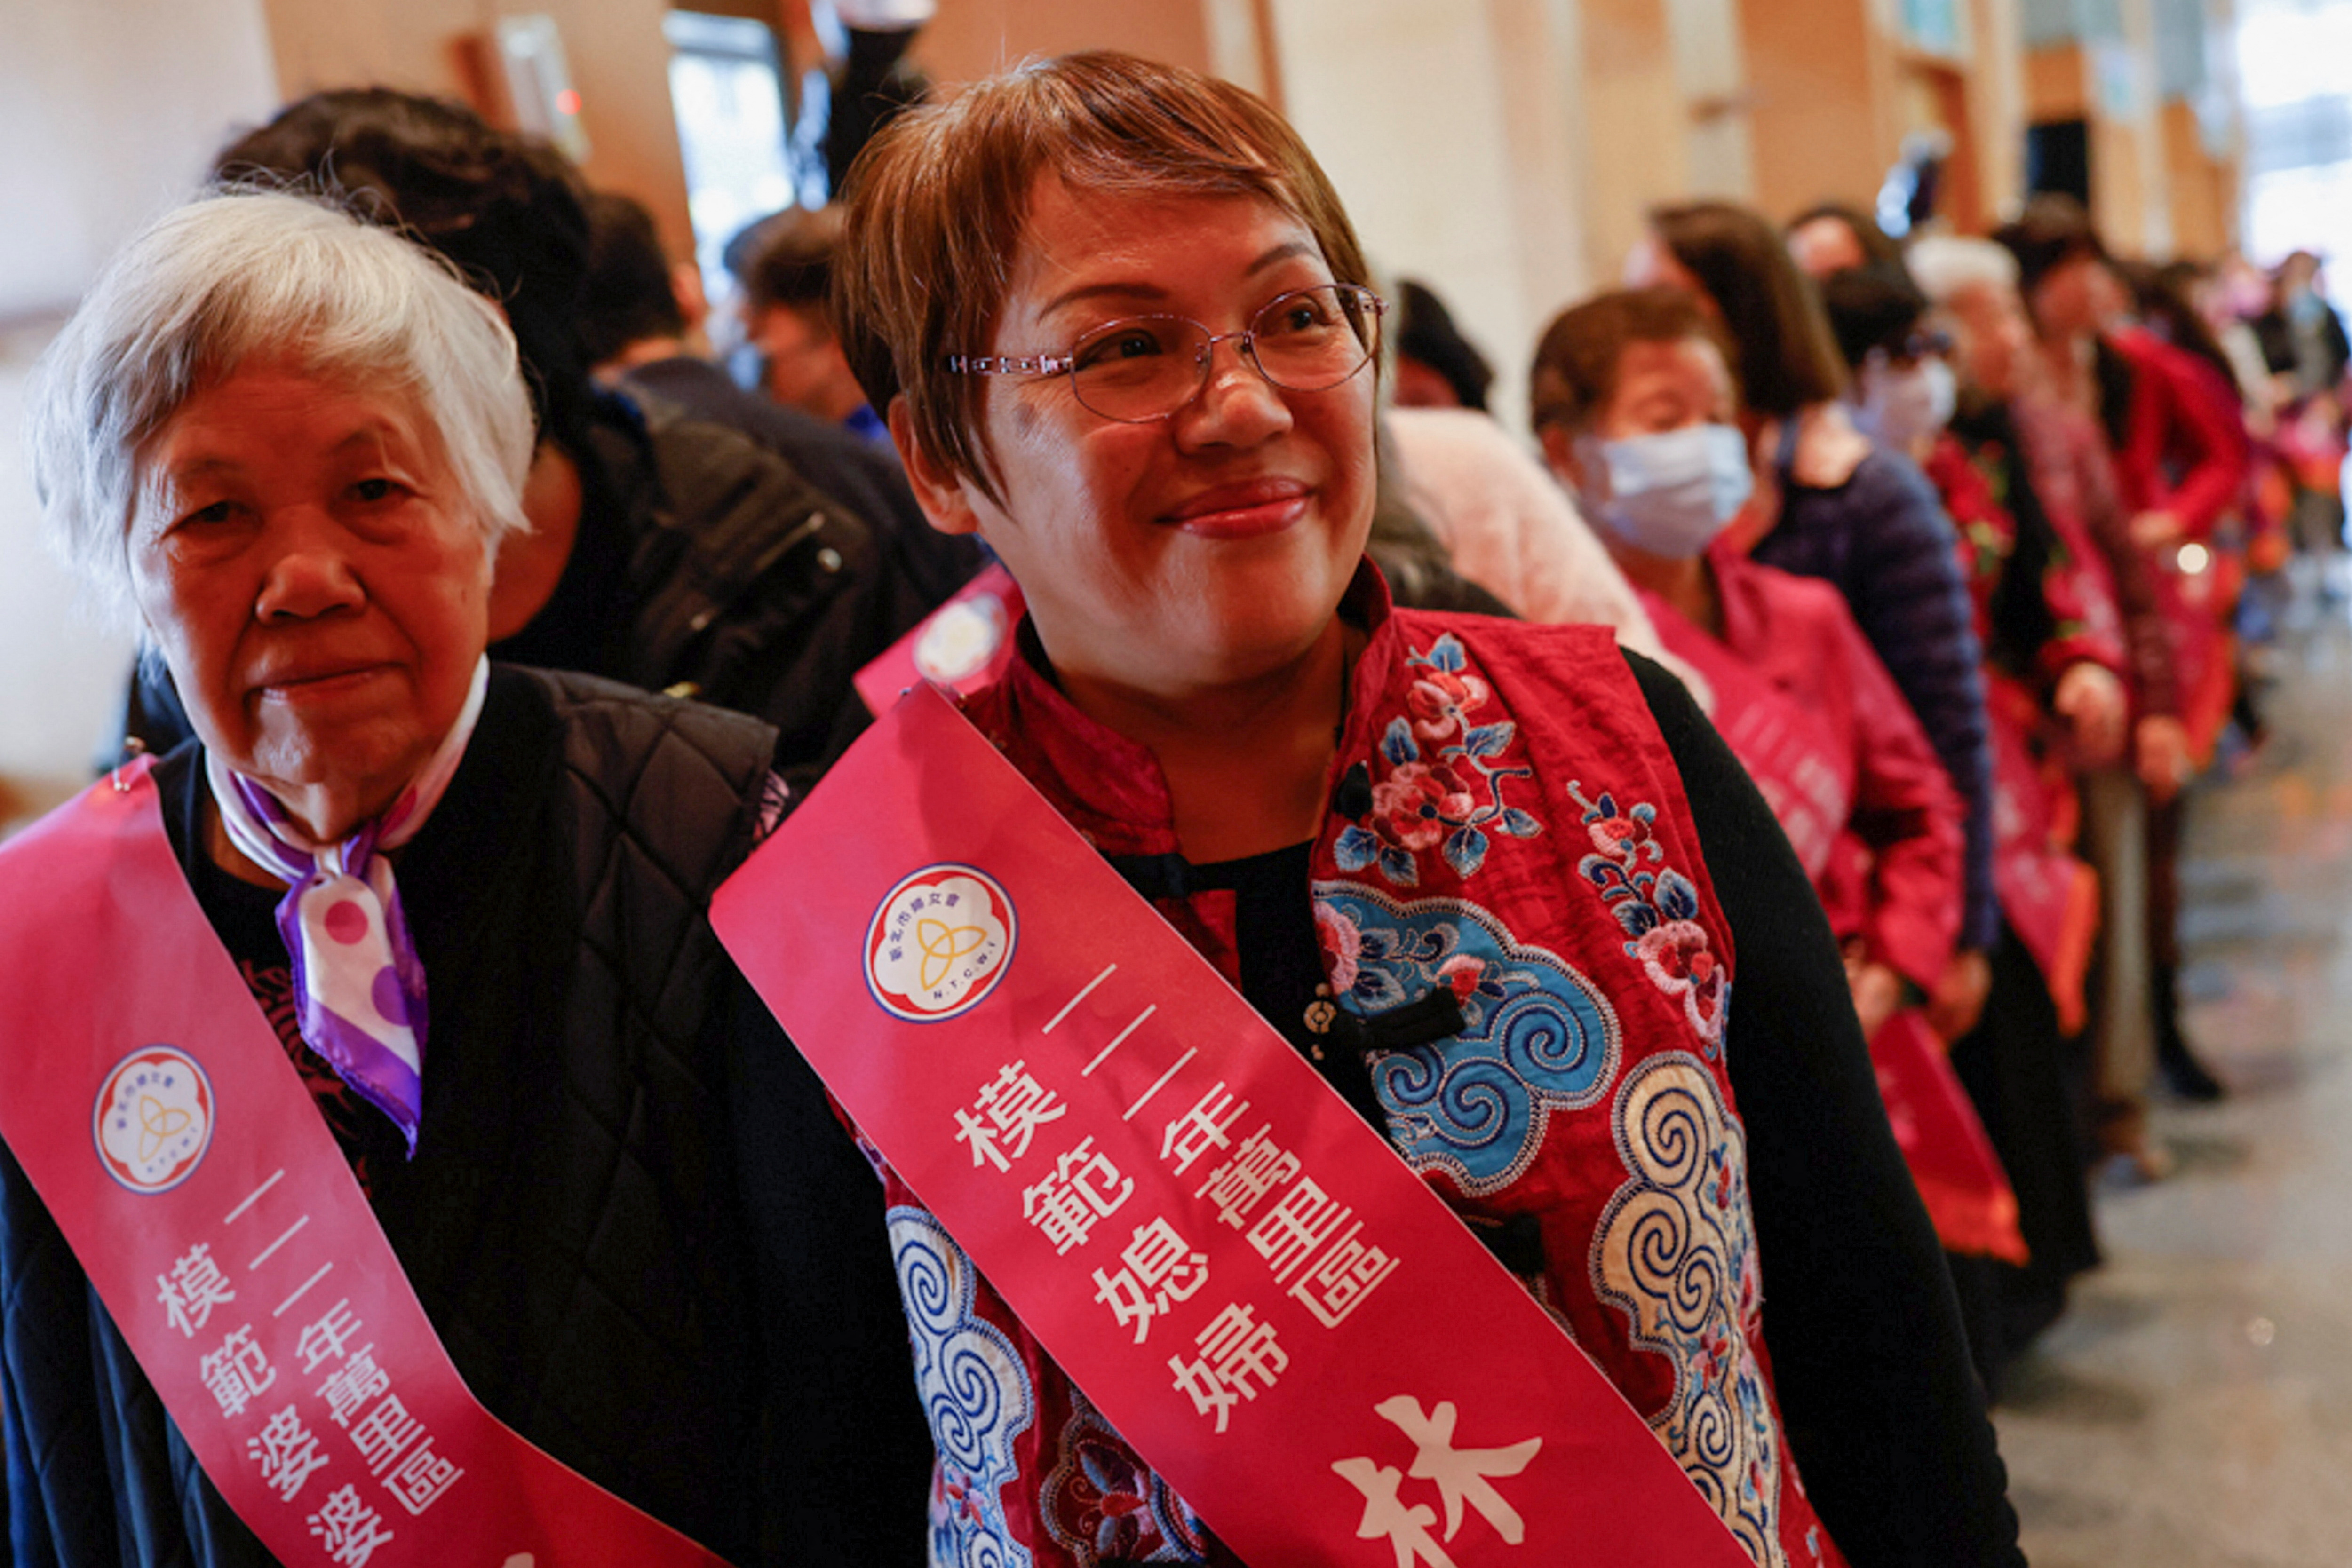 Las mujeres esperan para subir al escenario para recibir sus premios en un evento que celebra el día Internacional de la Mujer en la ciudad de New Taipei, Taiwán.